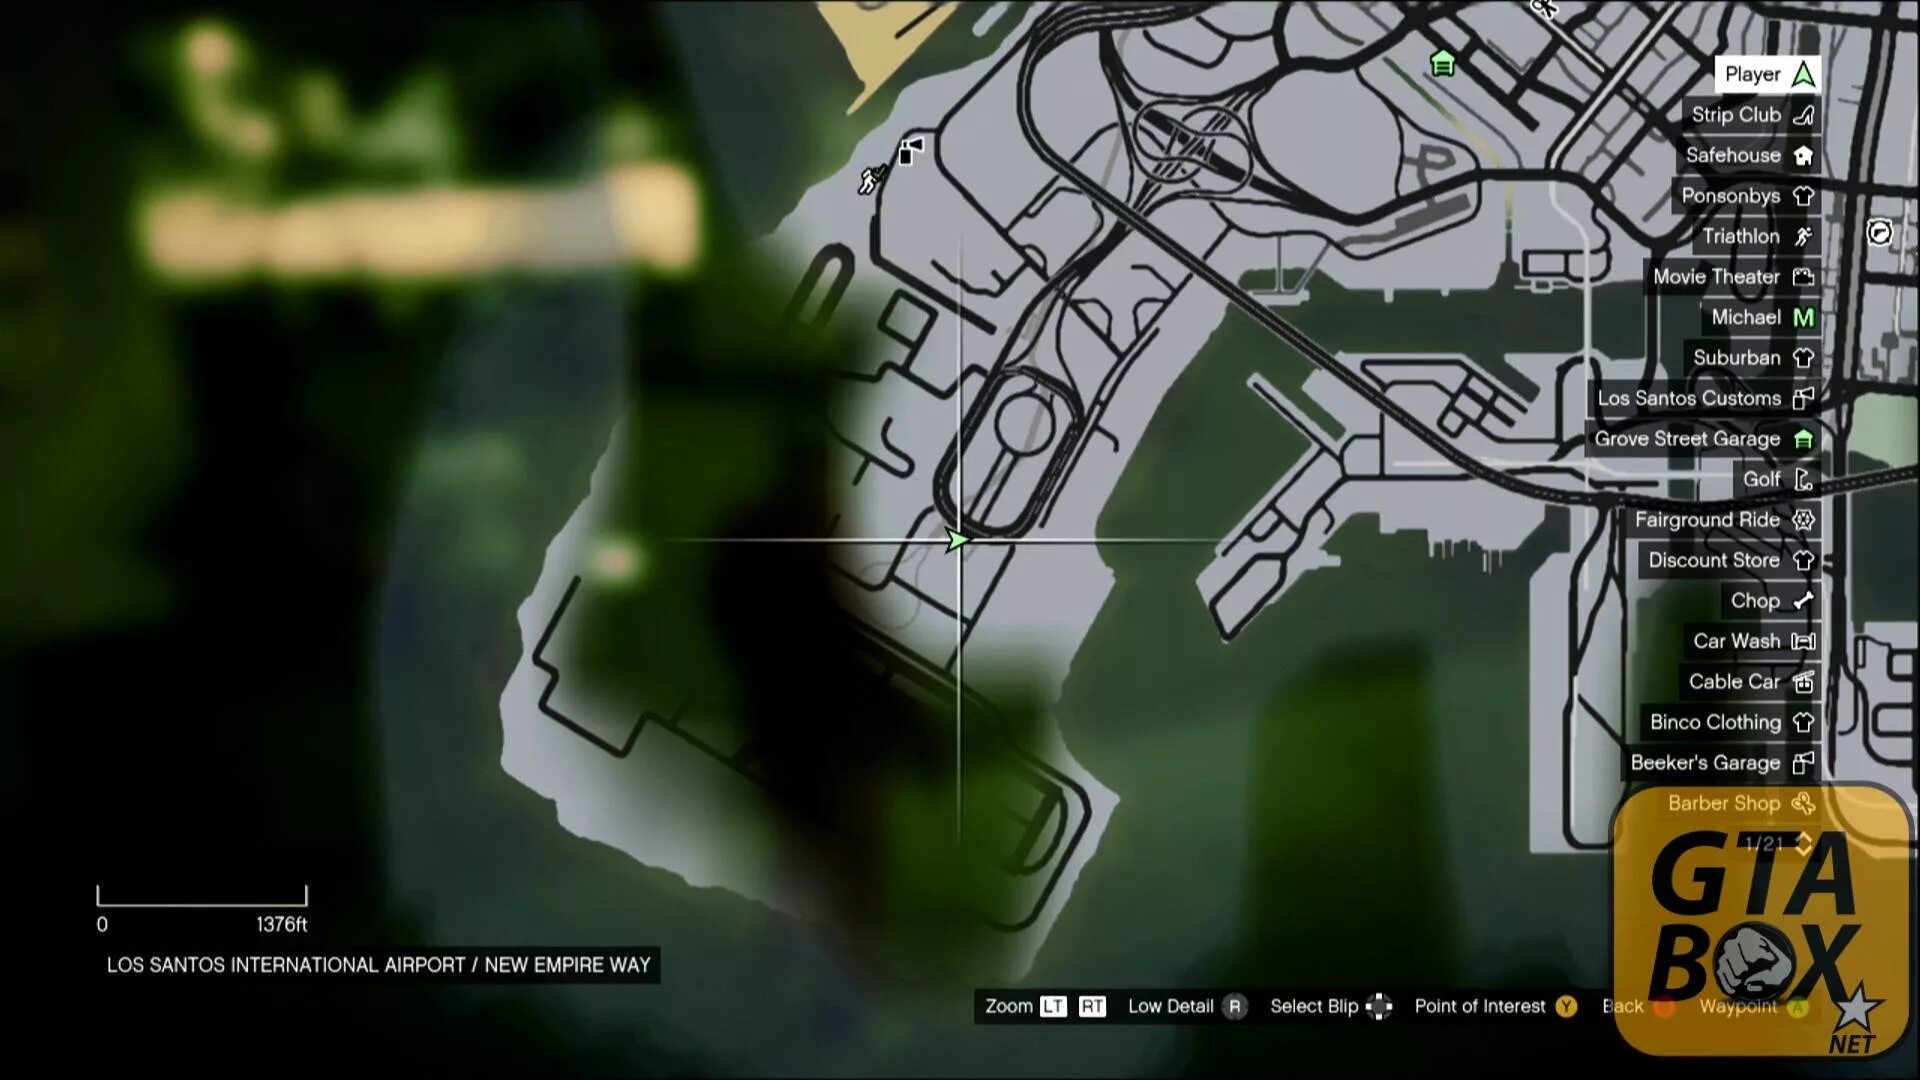 Карта GTA 5 Xbox 360. Карта обрывков письма в GTA 5. Карта всех писем в ГТА 5. Карта обрывков в ГТА 5. Карта обрывков гта 5